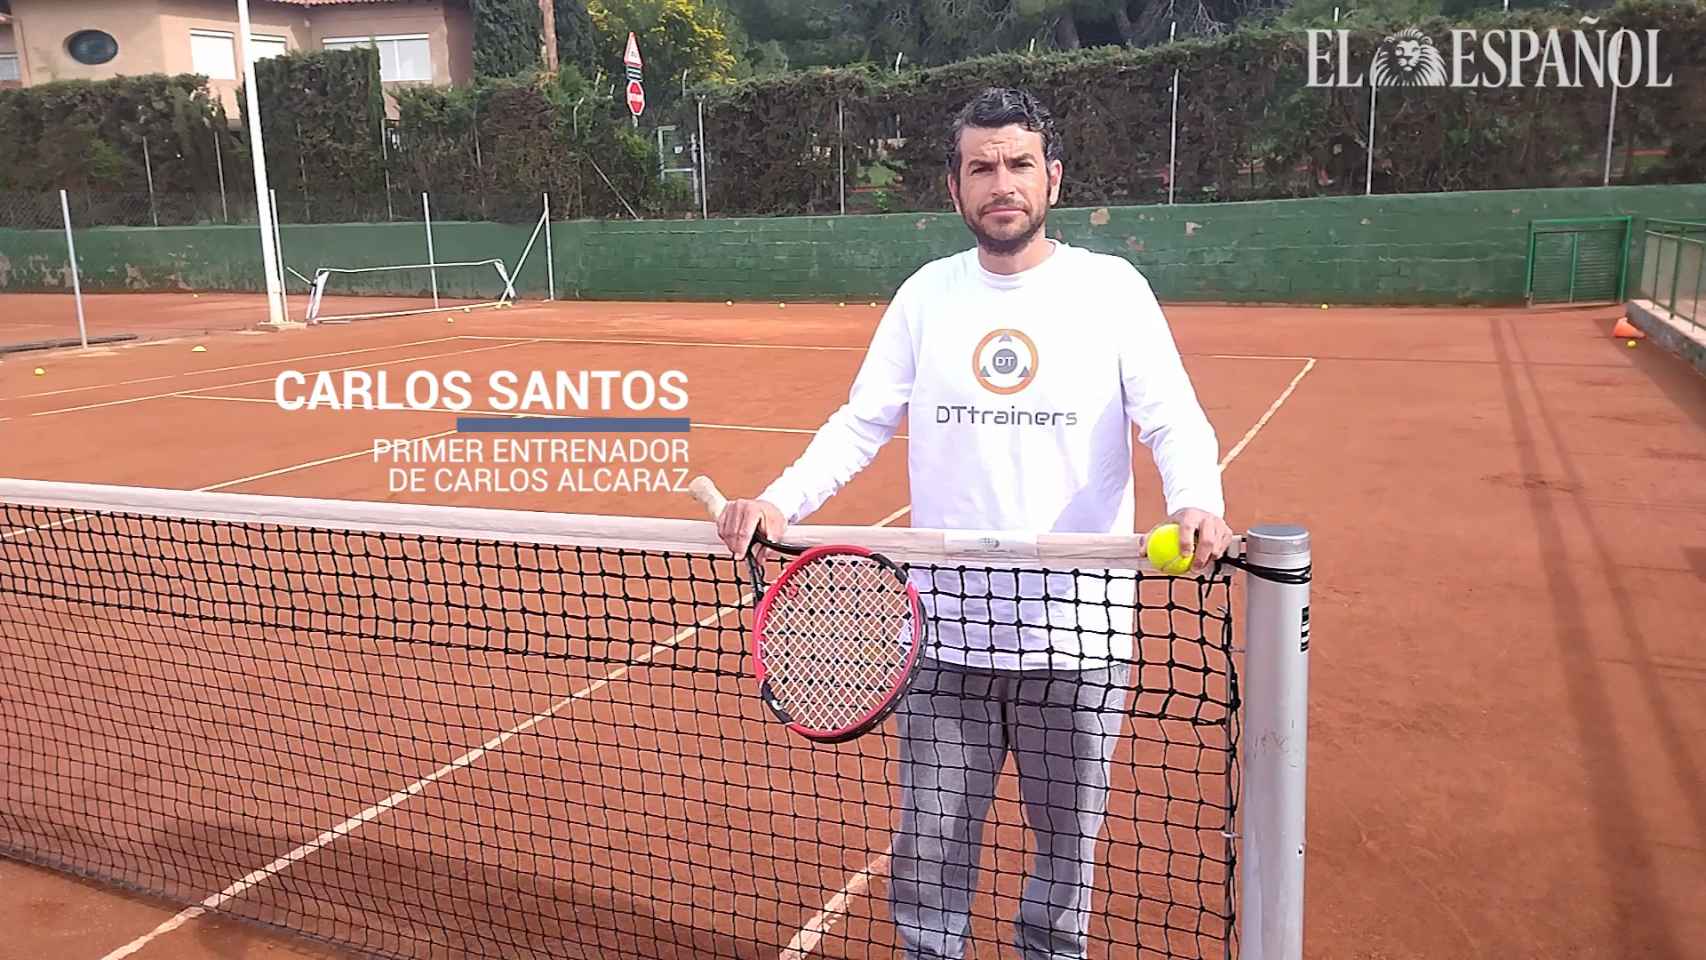 Entrevista a Carlos Santos, el primer entrenador de Carlos Alcaraz